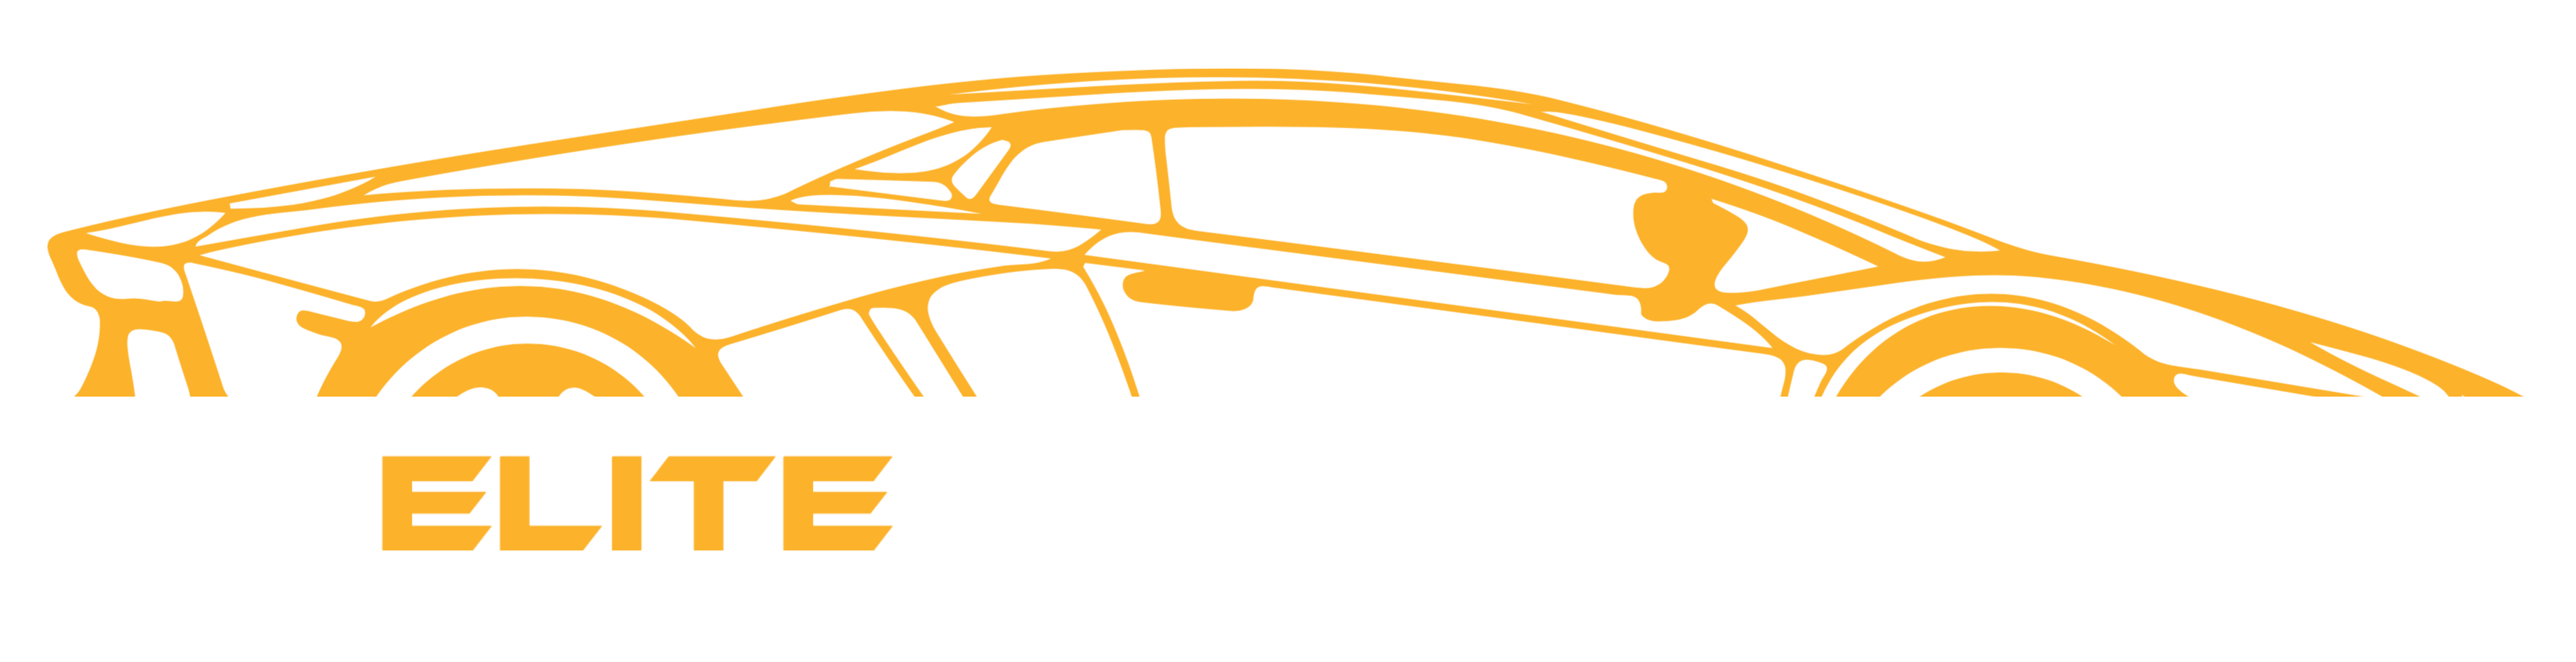 Elite Auto Sales LLC